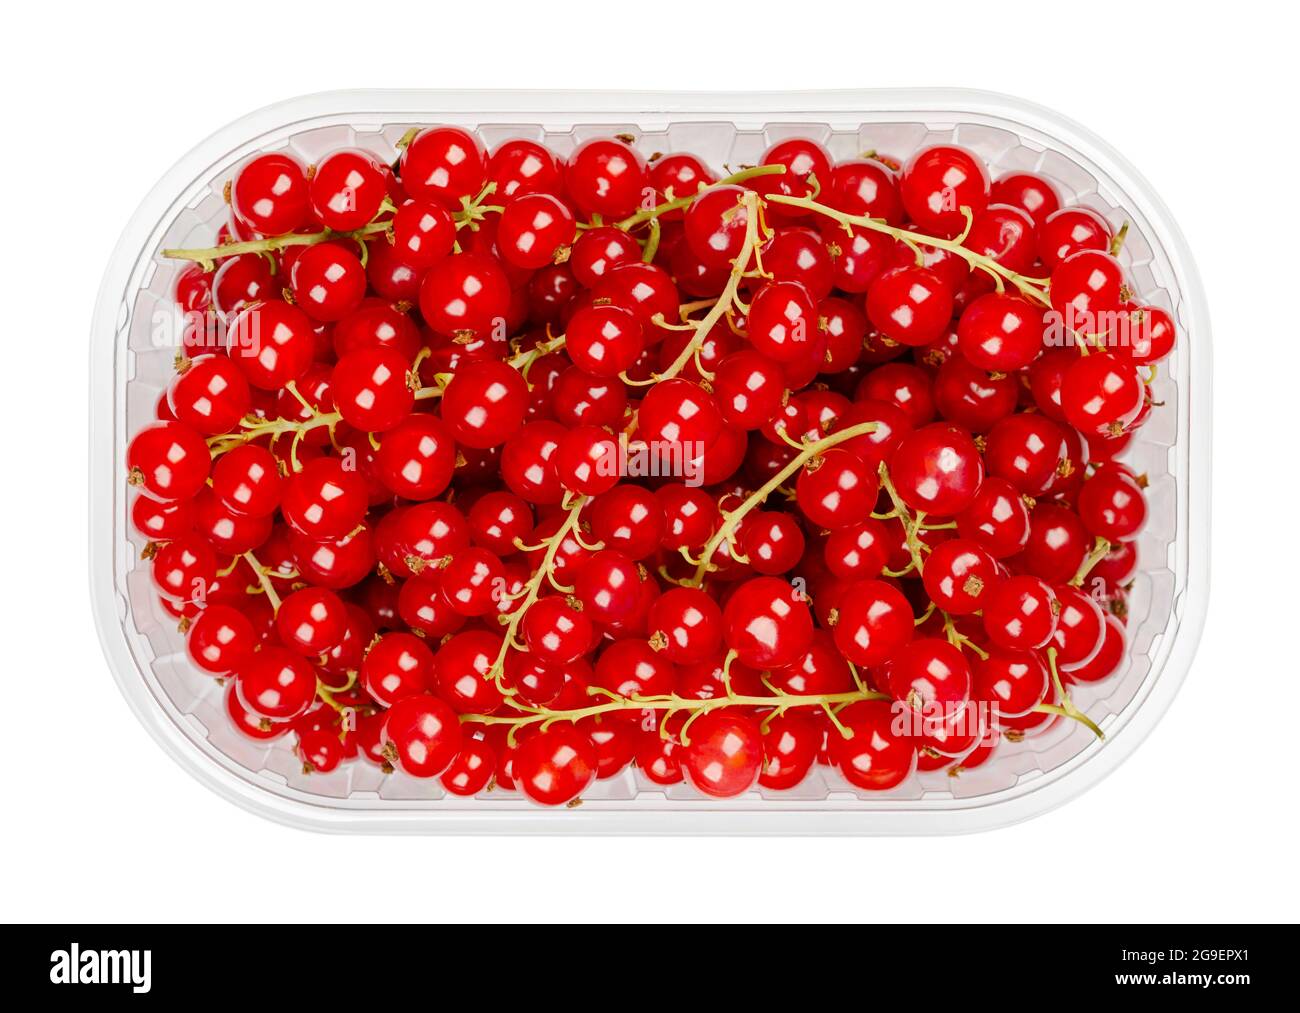 Rote Johannisbeeren, in einem Plastikbehälter. Frische reife rote Johannisbeerbeeren, kugelförmige essbare Früchte von Ribes rubrum. Süße Früchte. Stockfoto